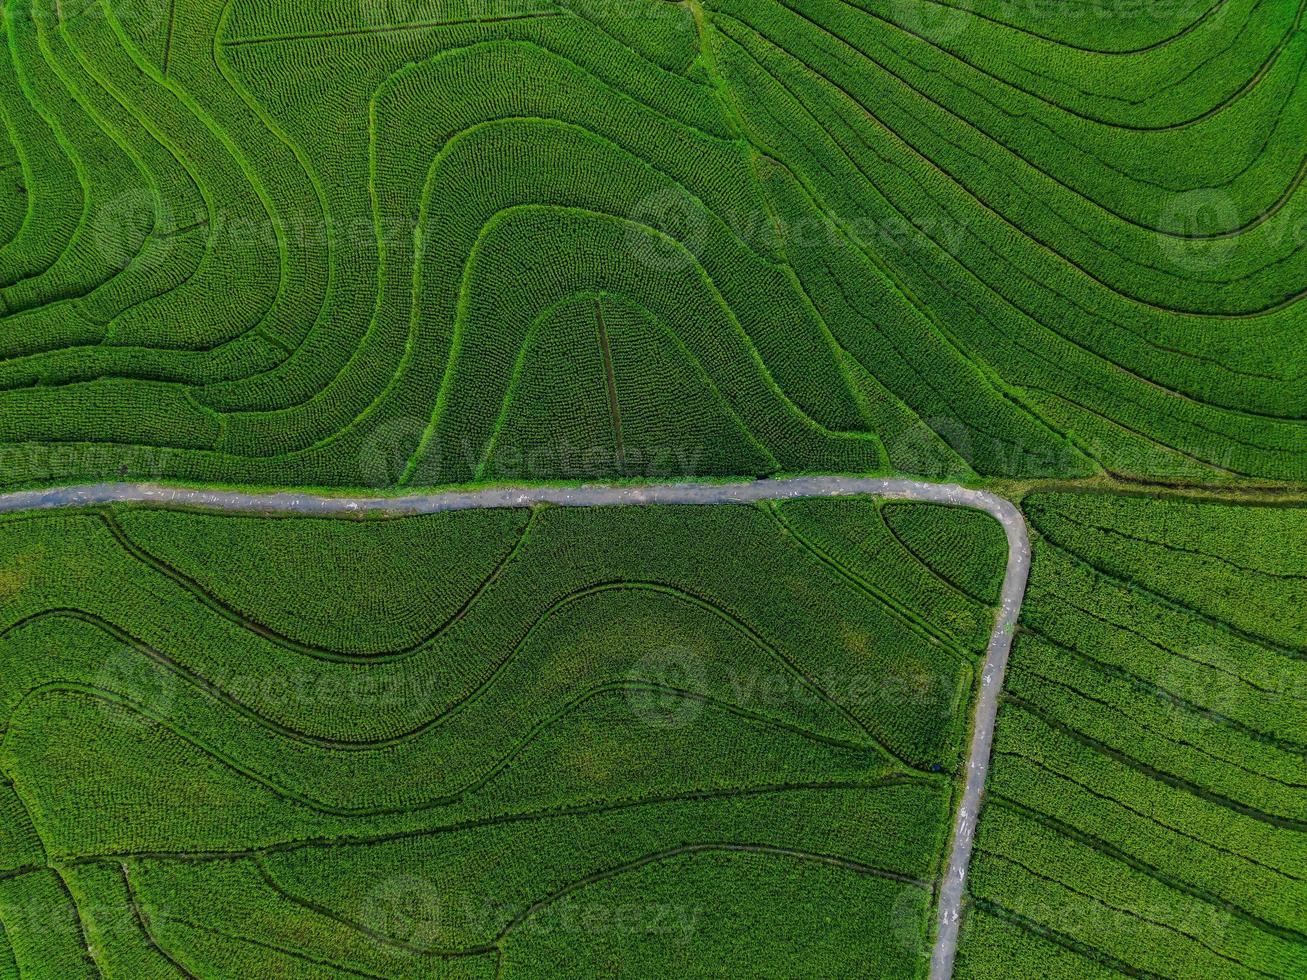 antenne visie van groen rijst- terrassen in Indonesië foto